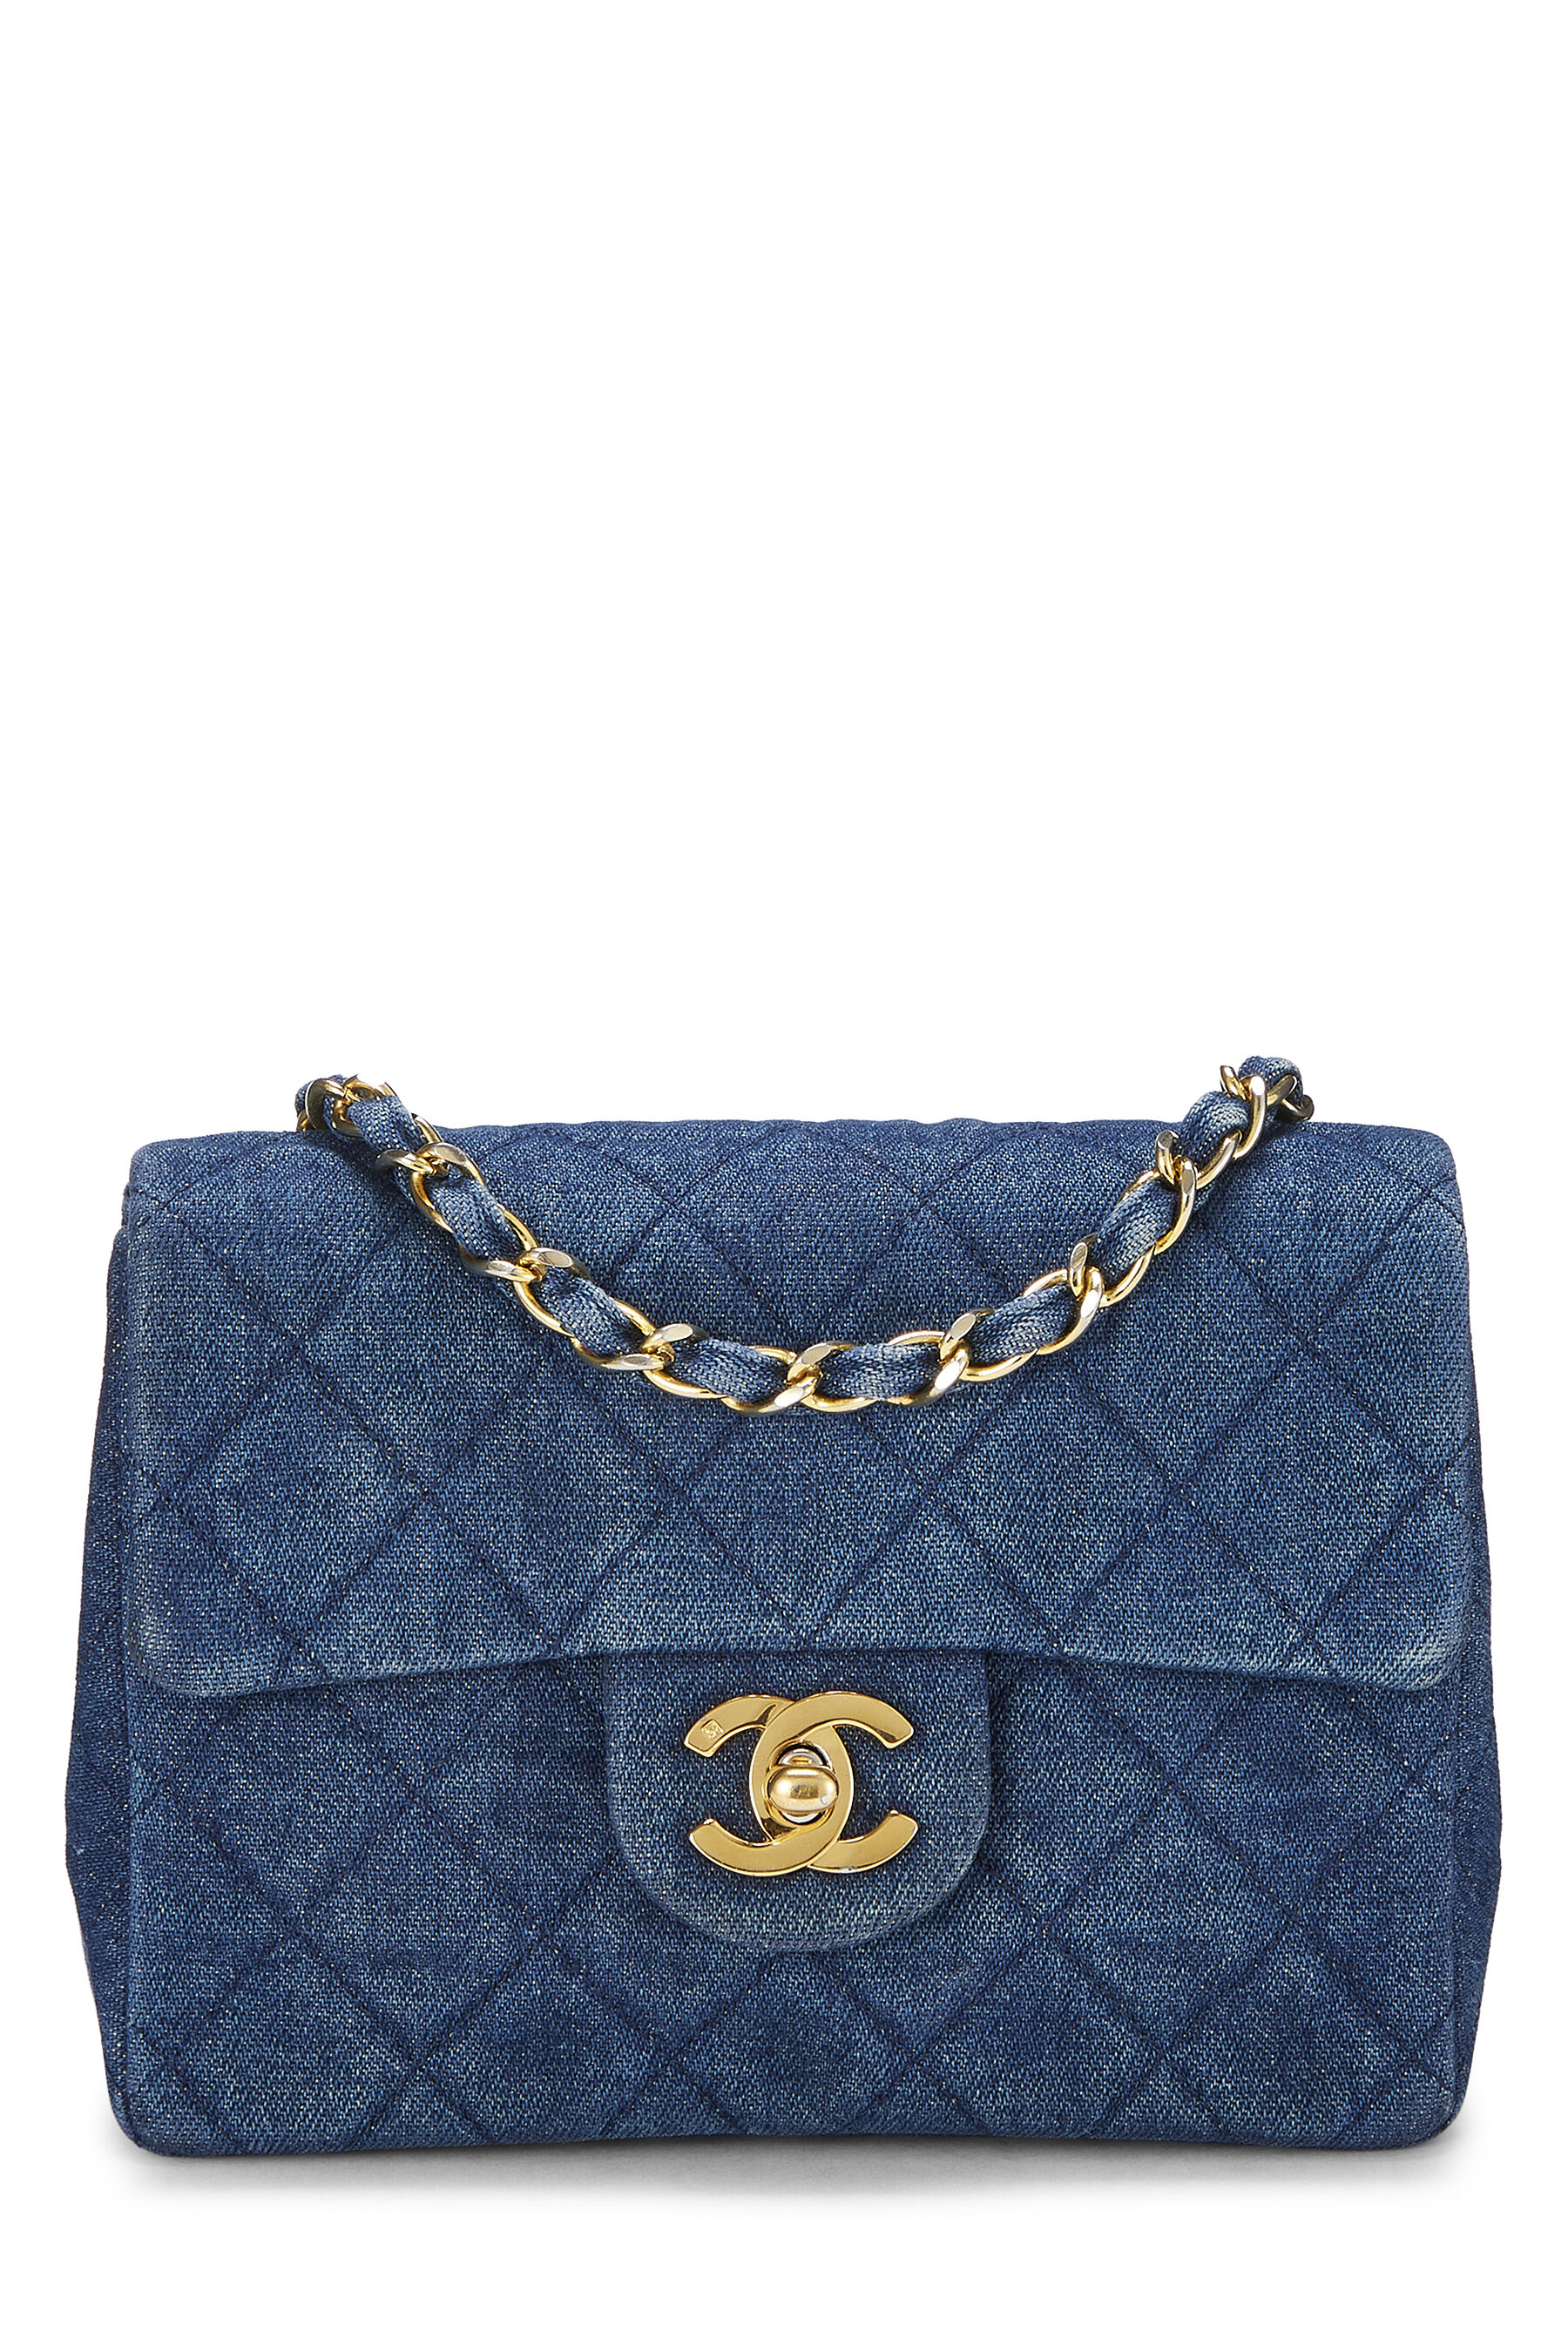 Chanel - Blue Denim Half Flap Mini